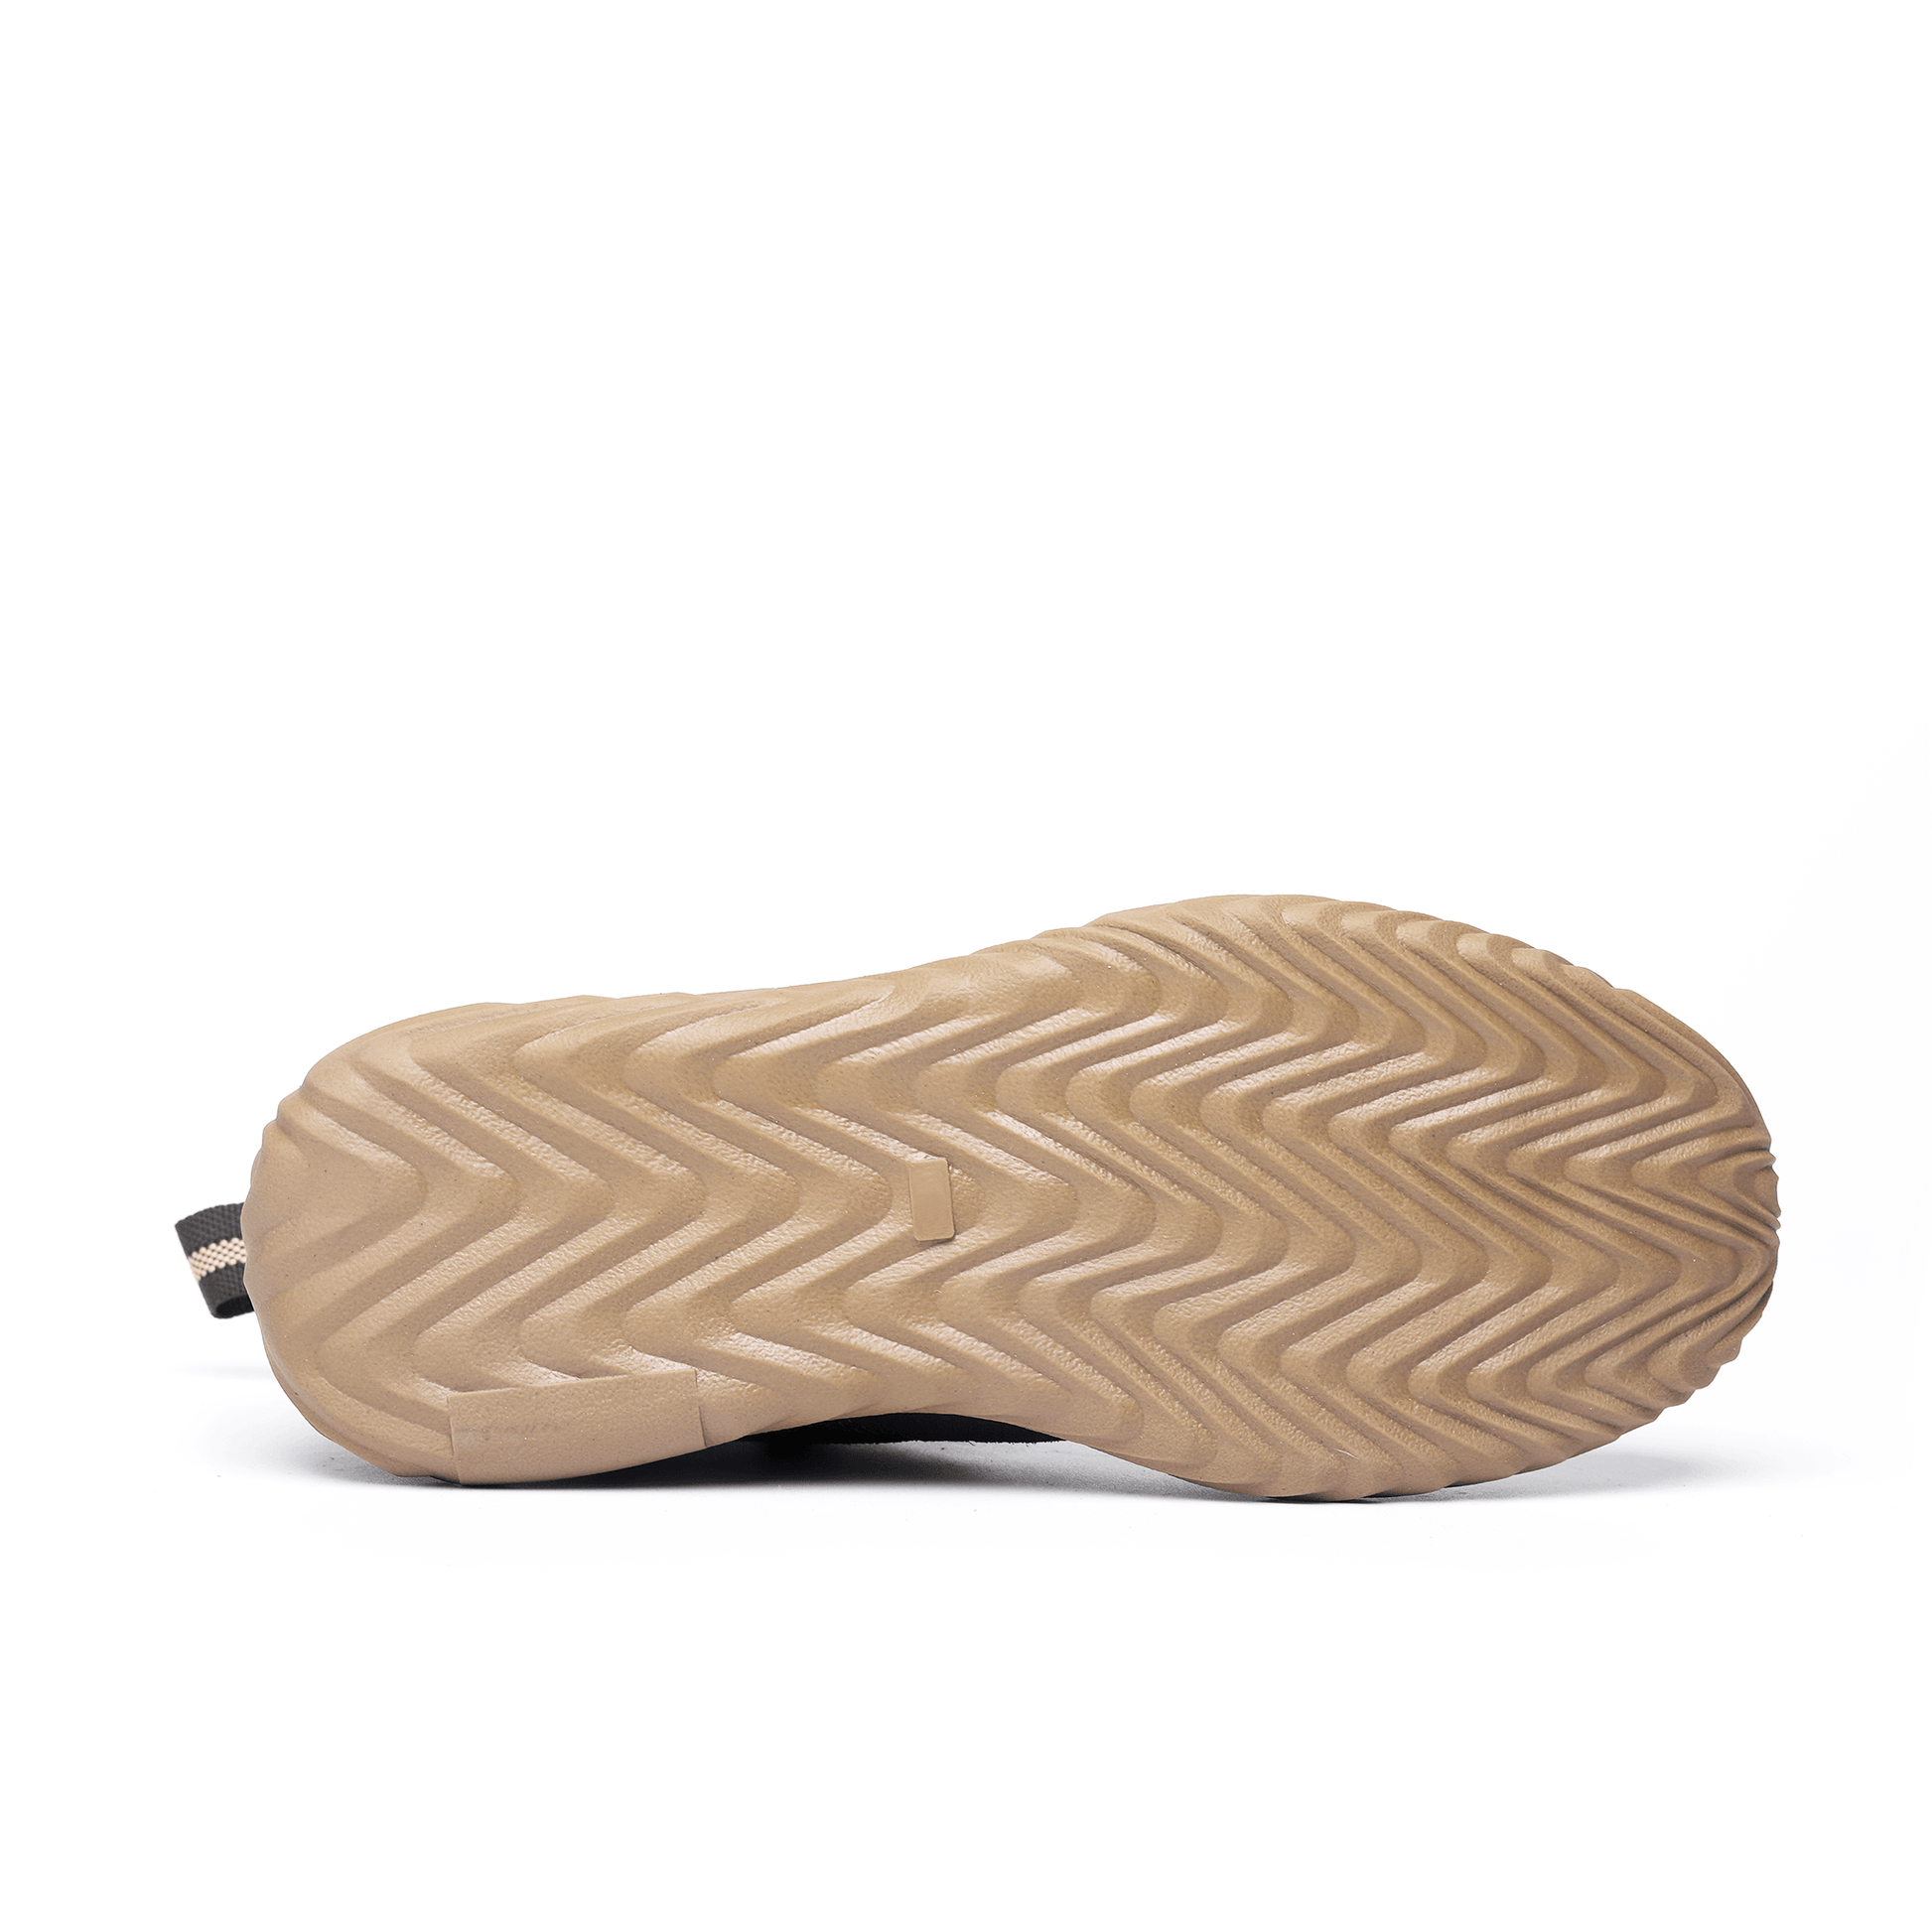 Women's Steel Toe Chelsea Boots - Rubber Sole | B071 - USINE PRO Footwear